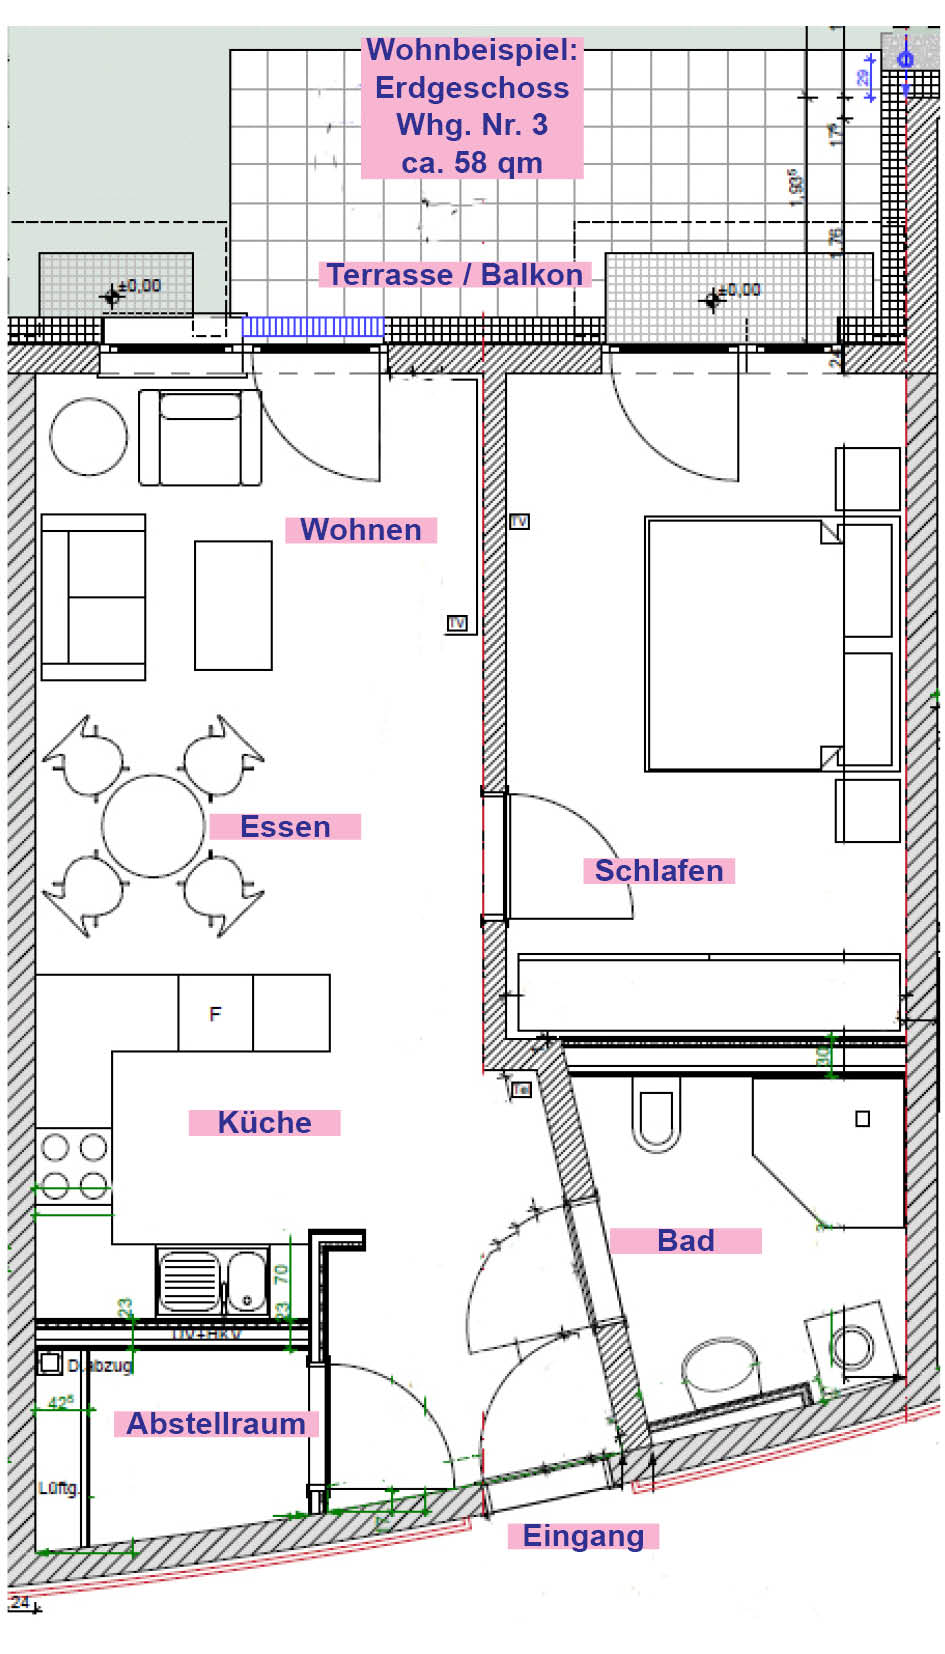 Plan als Wohnbeispiel der Wohnung Nr. 3 (nicht maßstabsgerecht)